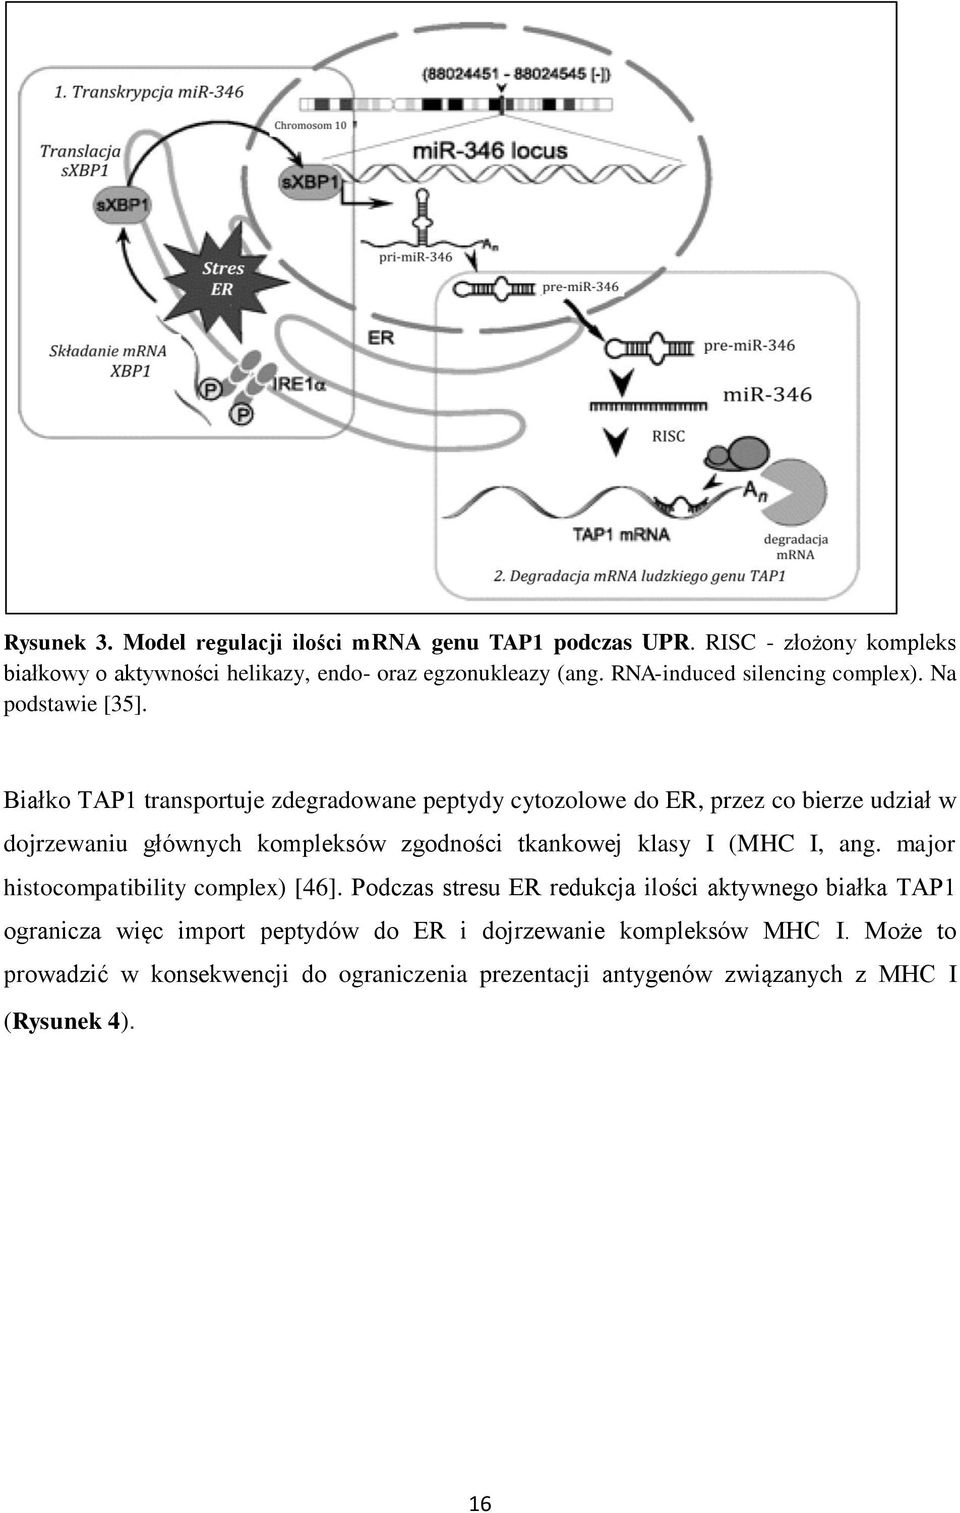 Białko TAP1 transportuje zdegradowane peptydy cytozolowe do ER, przez co bierze udział w dojrzewaniu głównych kompleksów zgodności tkankowej klasy I (MHC I,